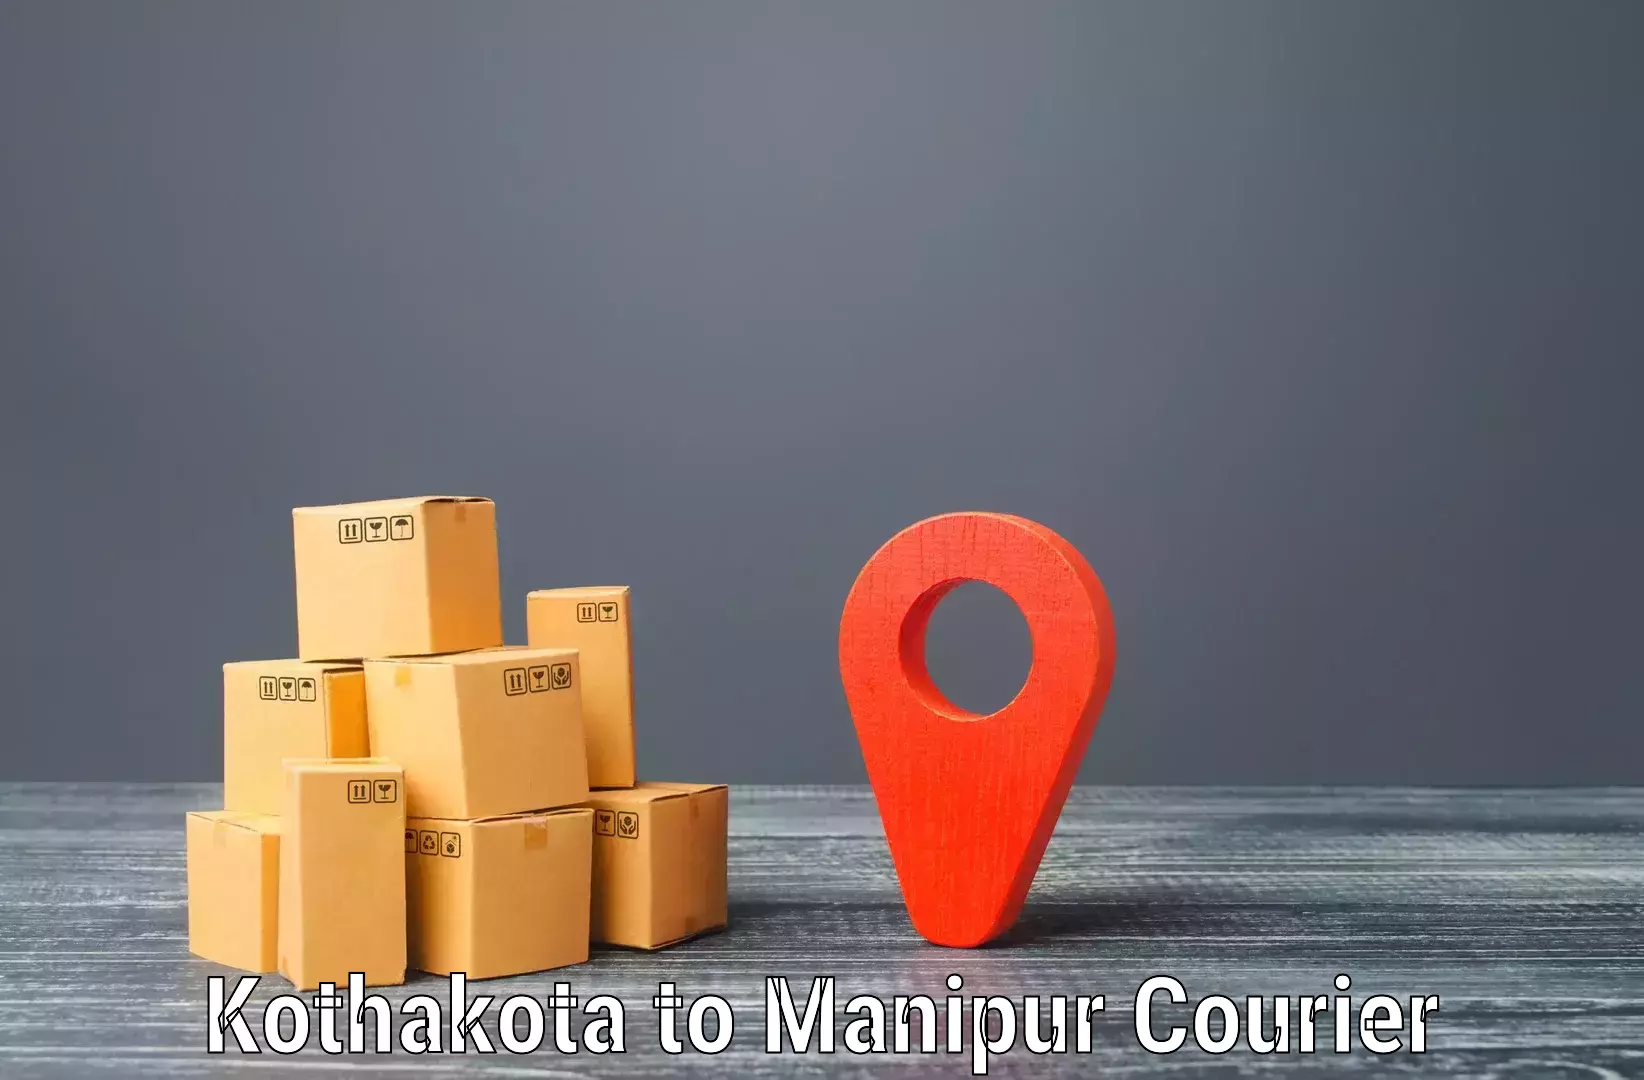 Courier services Kothakota to Churachandpur